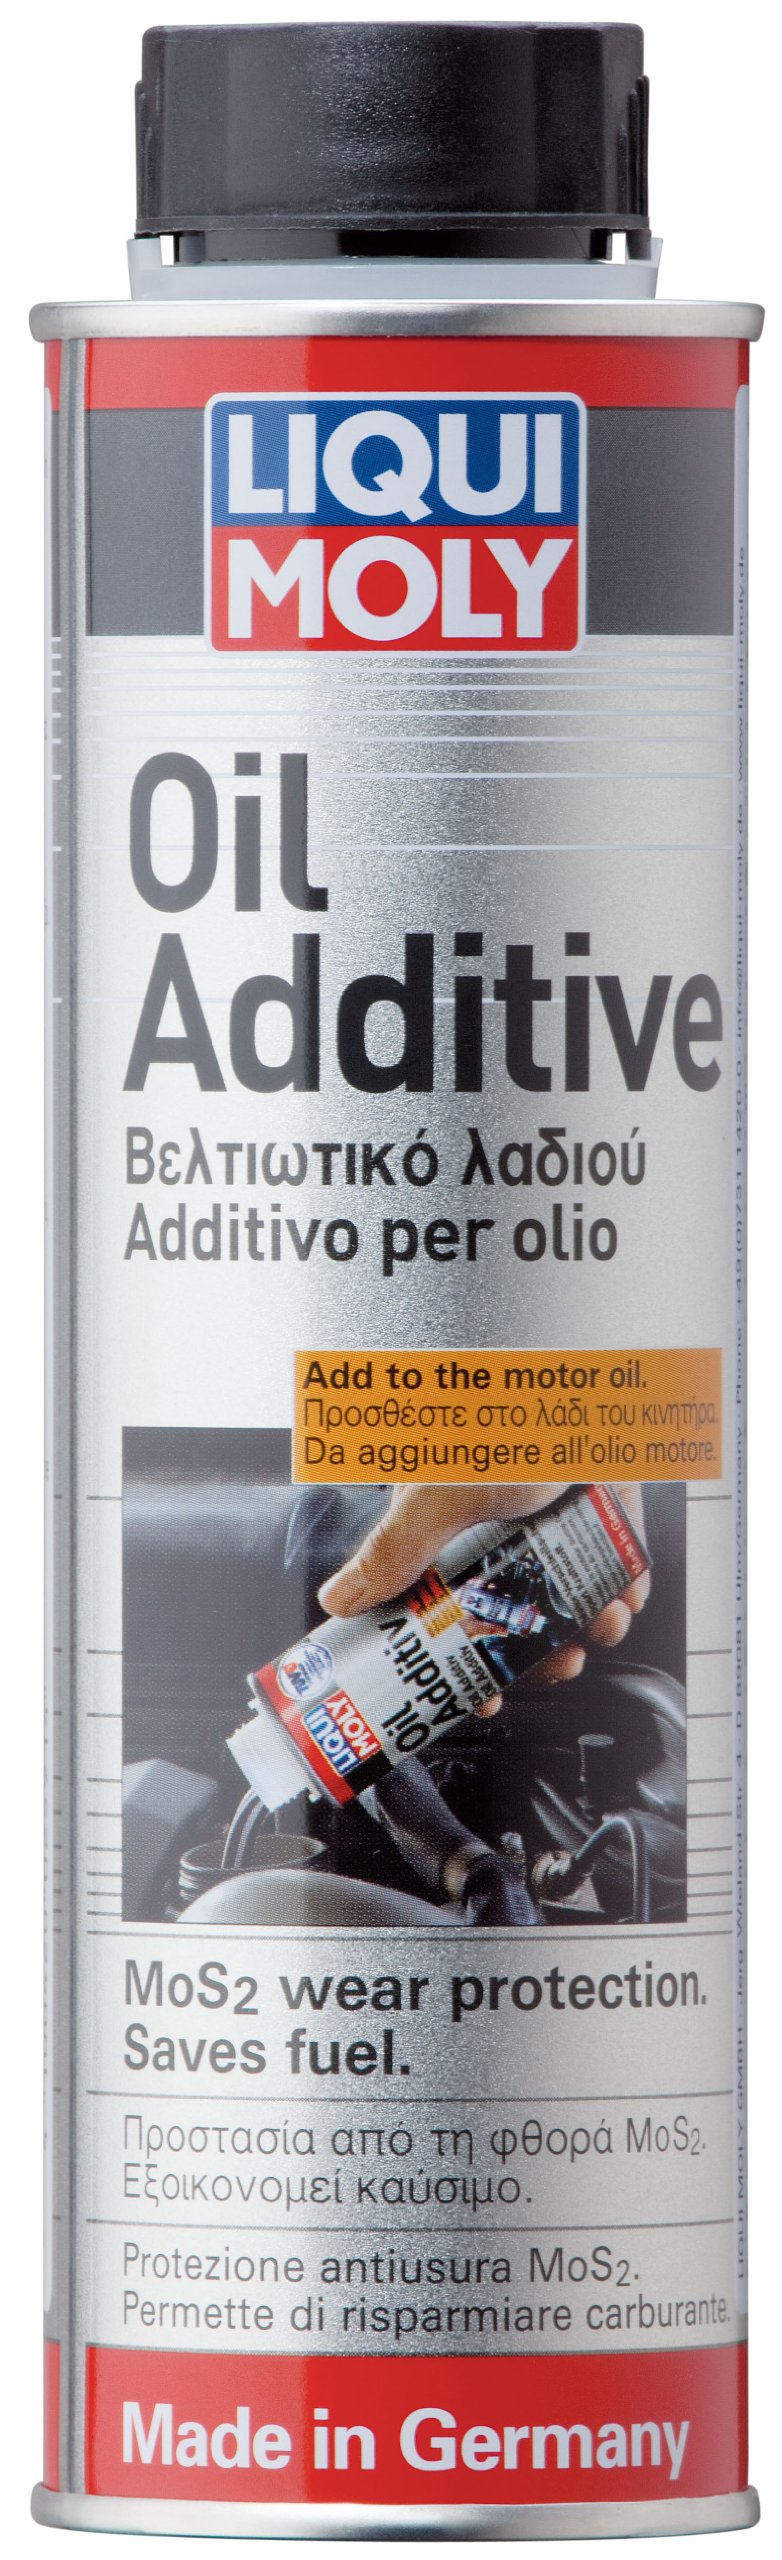 LIQUI MOLY 2591 Oil additive von Liqui Moly